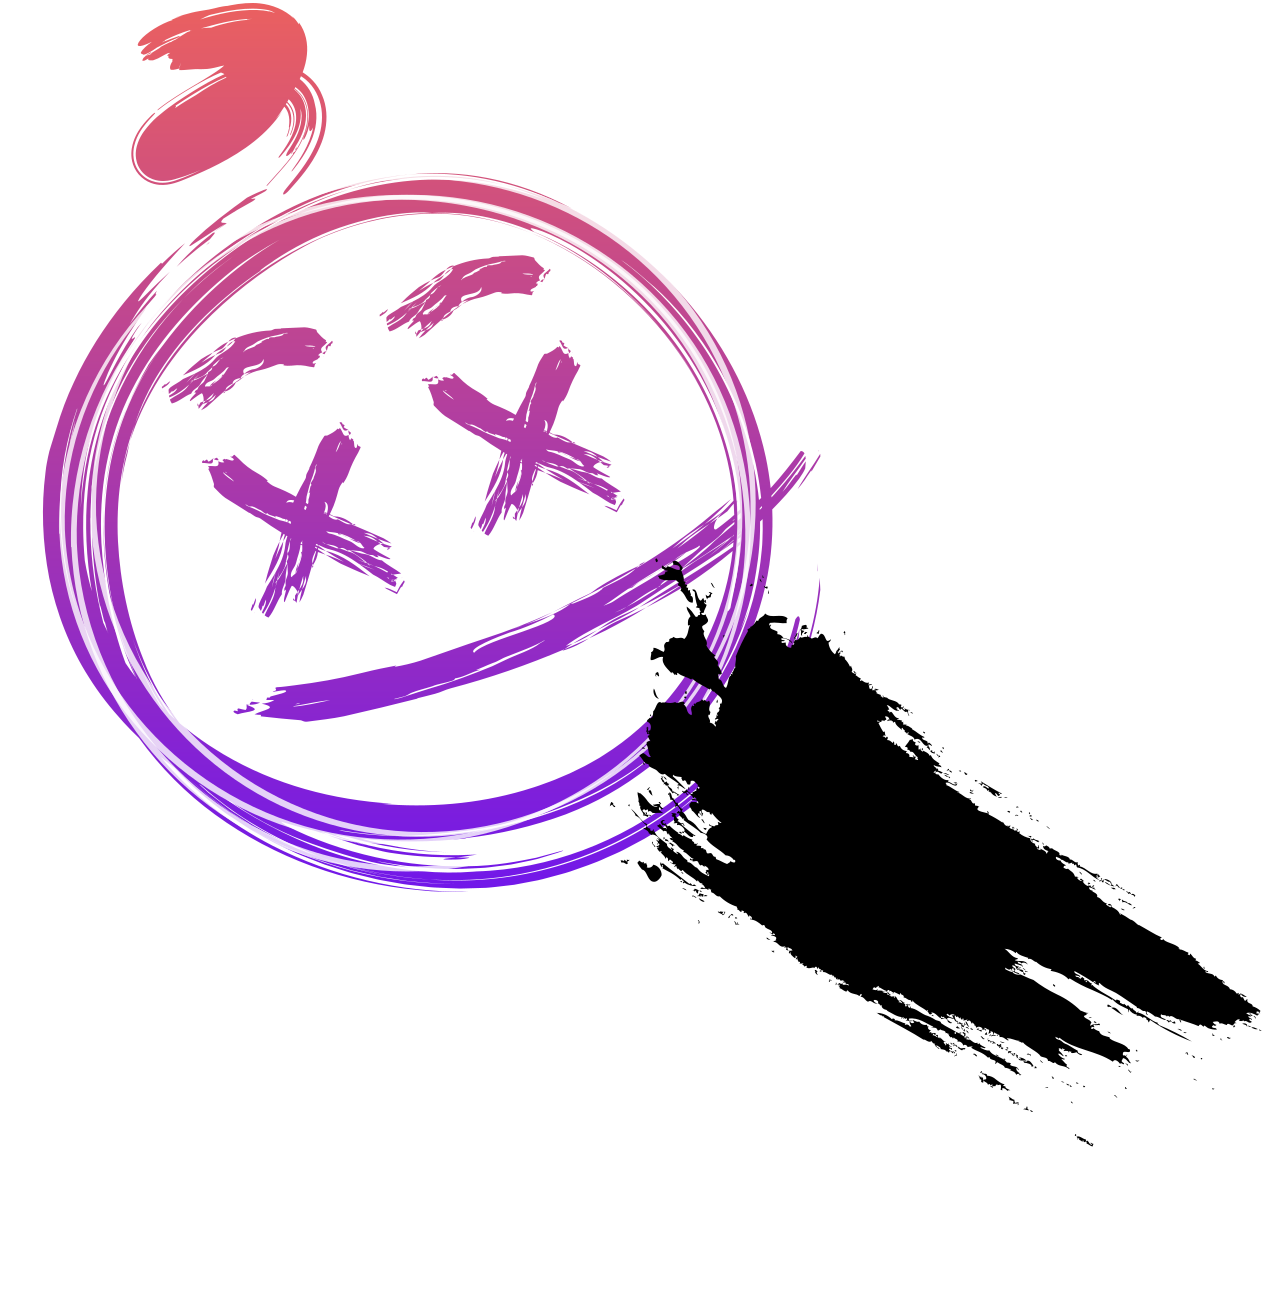 A3SiNT's logo